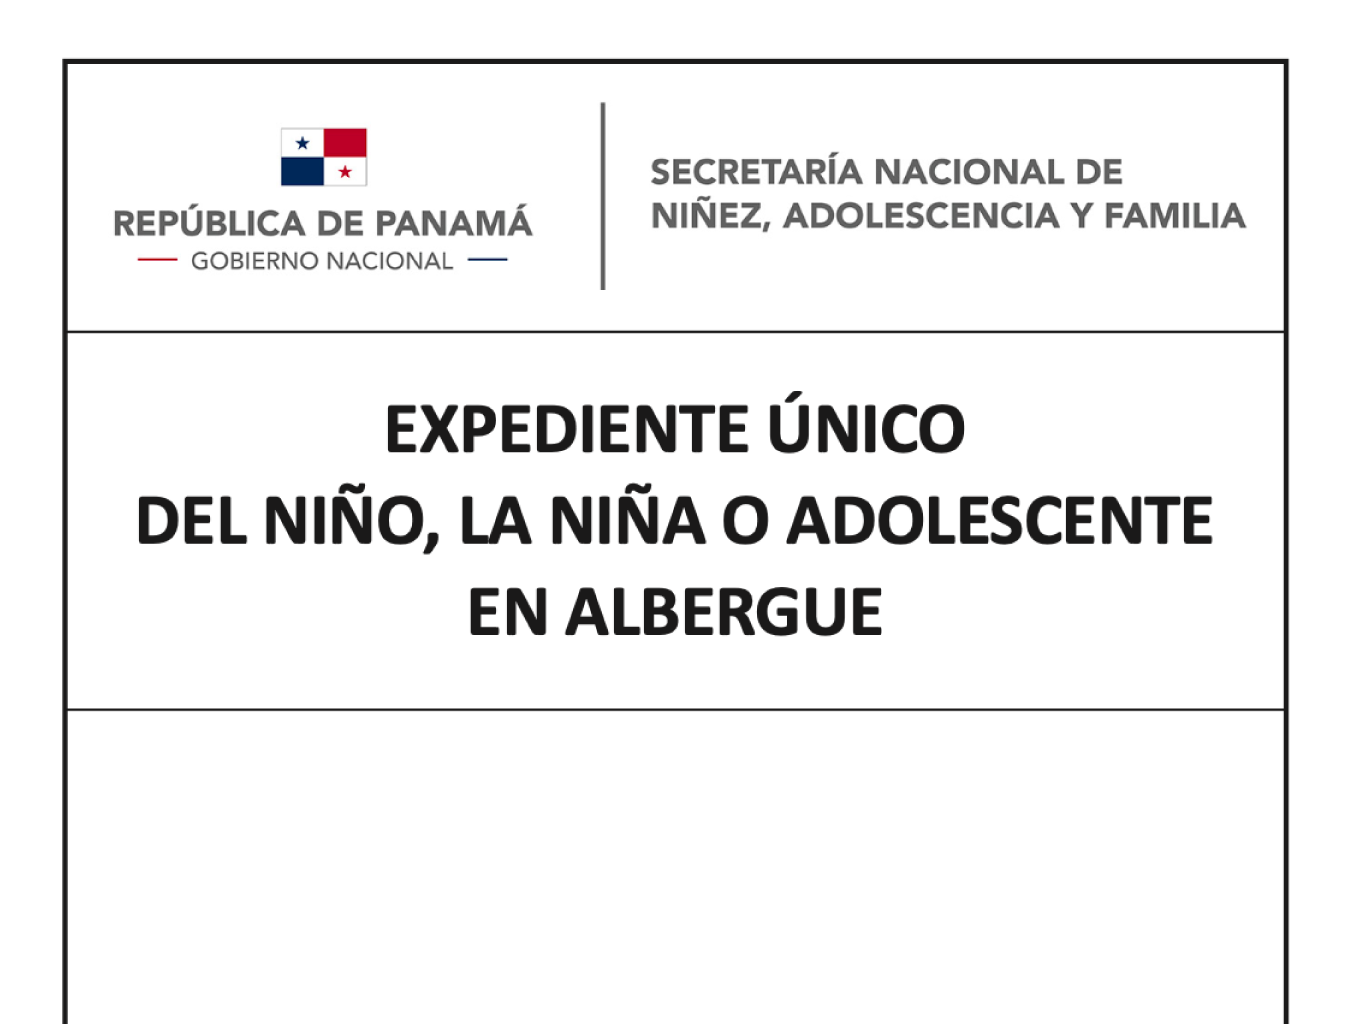 República de Panamá. Expediente único del niño, la niña o adolescente en albergue